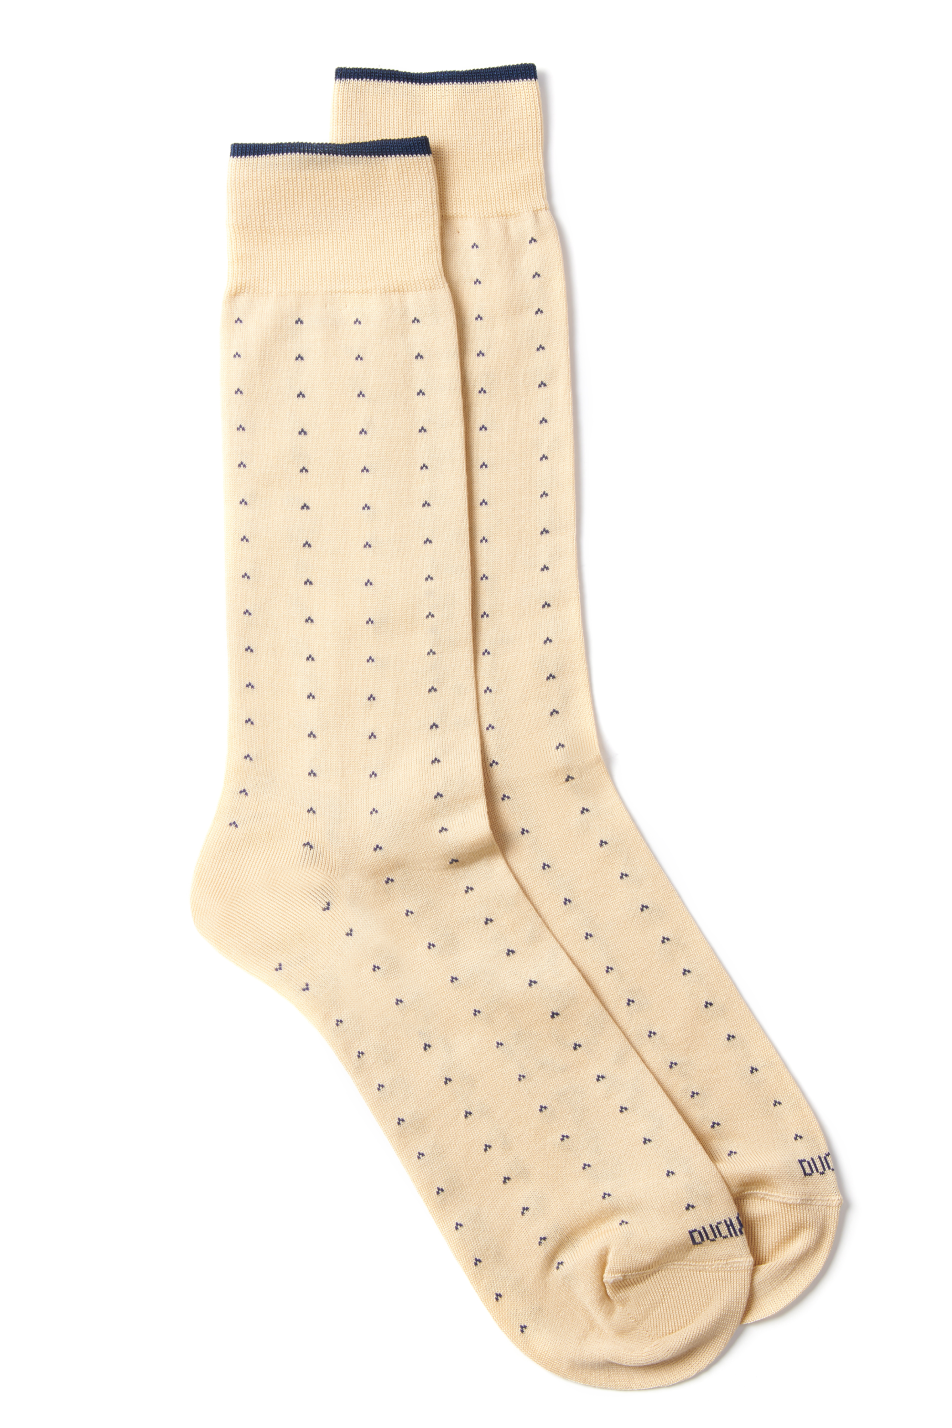 Duchamp Men's Dotted Sock